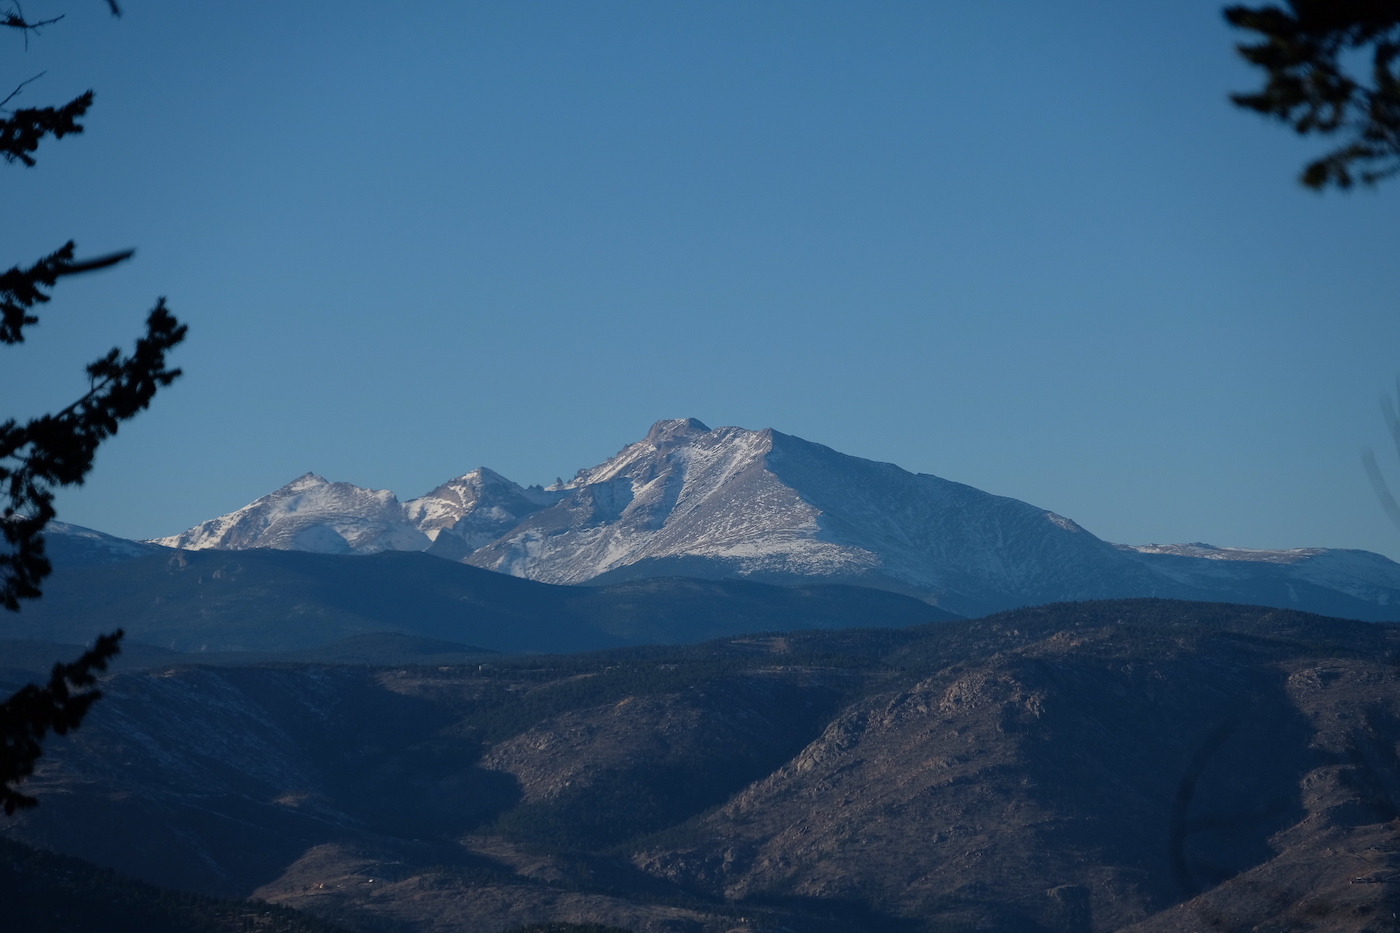 Longs Peak in Rocky Mountain National Park, Colorado